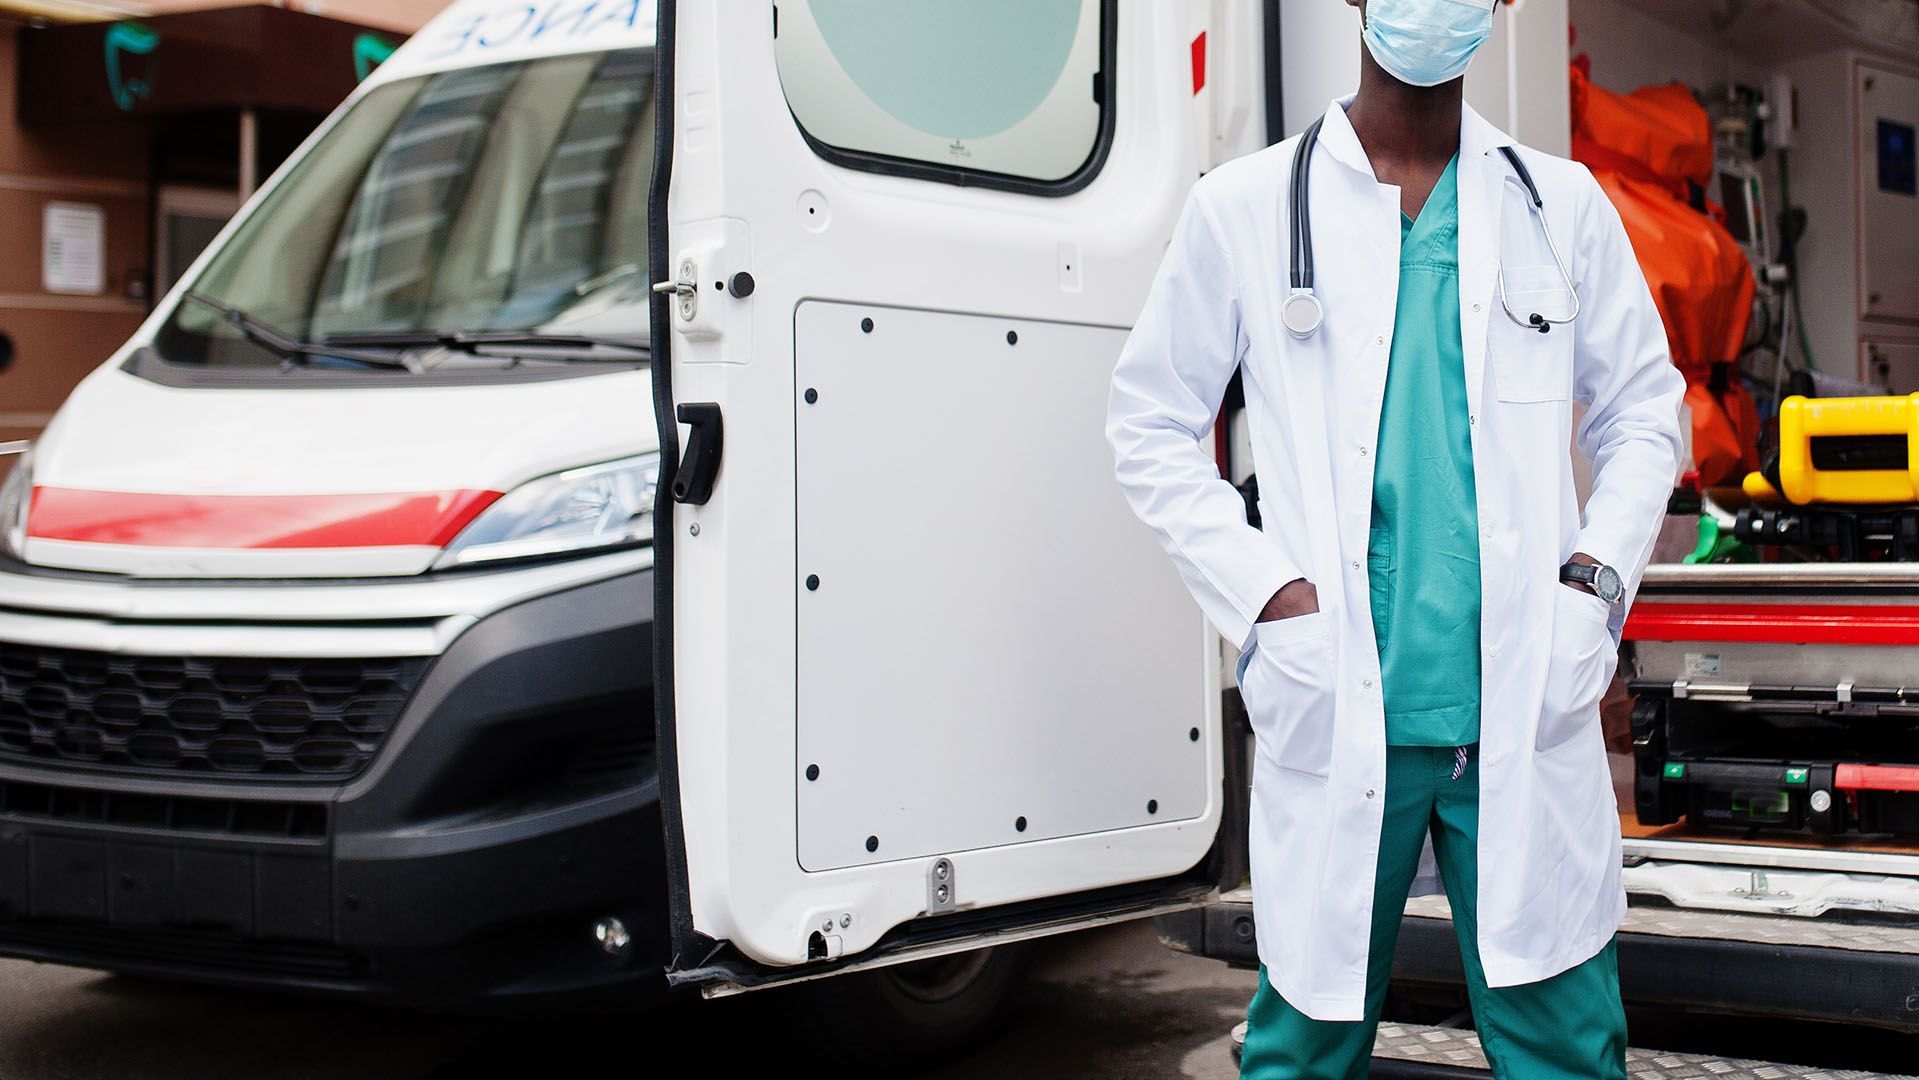 Foto de profissional de saúde em frente a duas ambulâncias | imagem de ASphotofamily